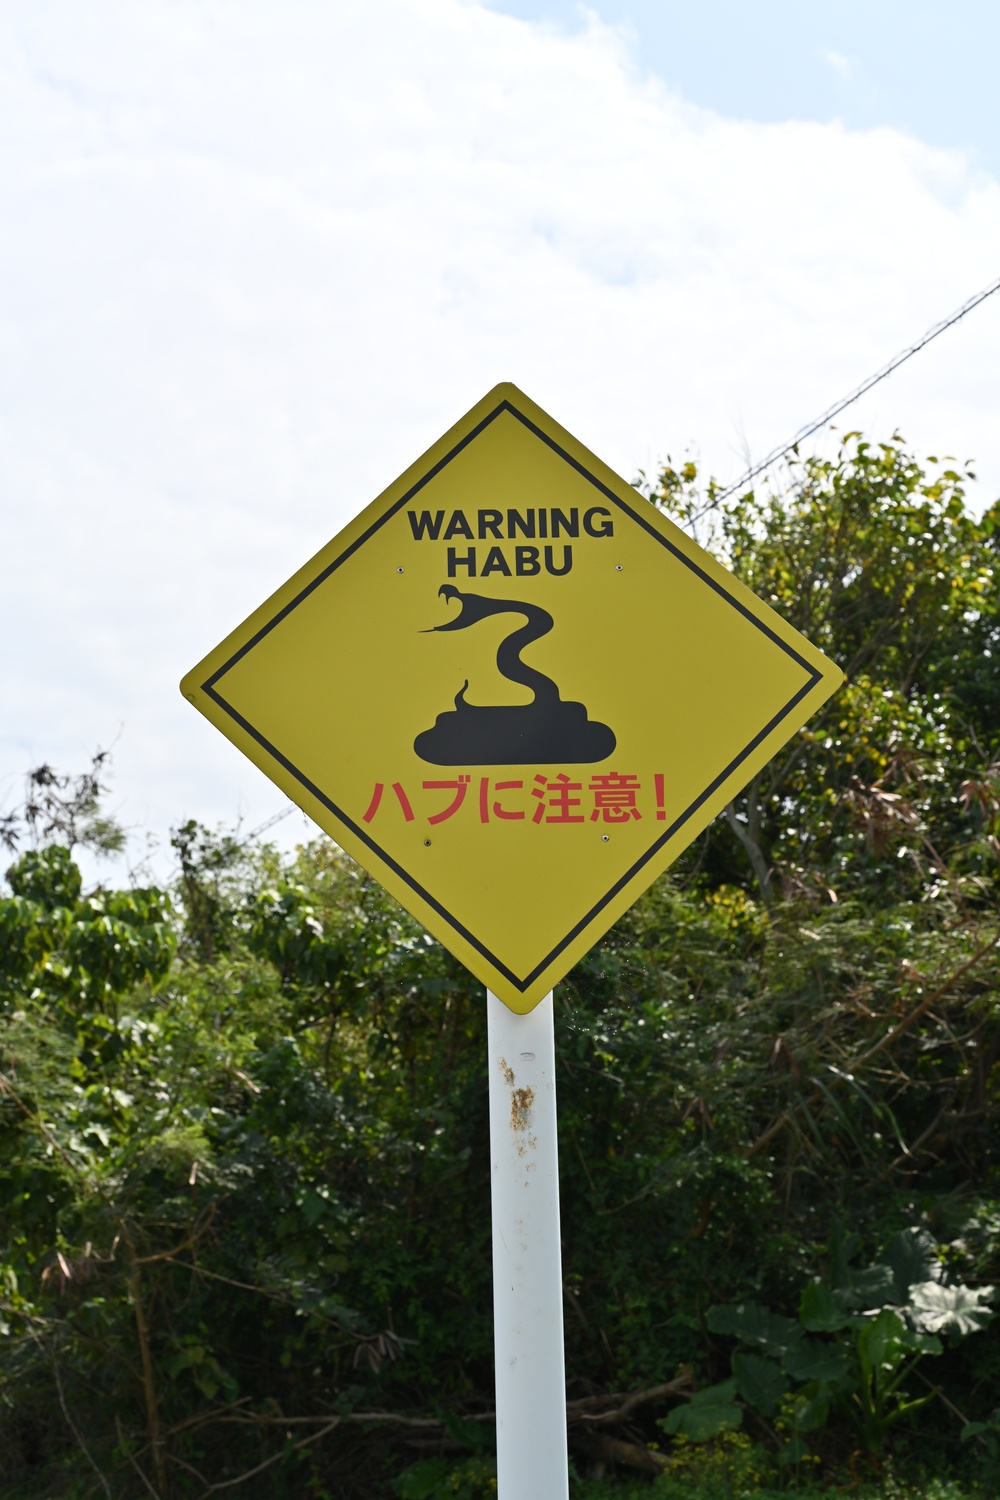 Habu Snake Warning Sign at White Beach Naval Facility